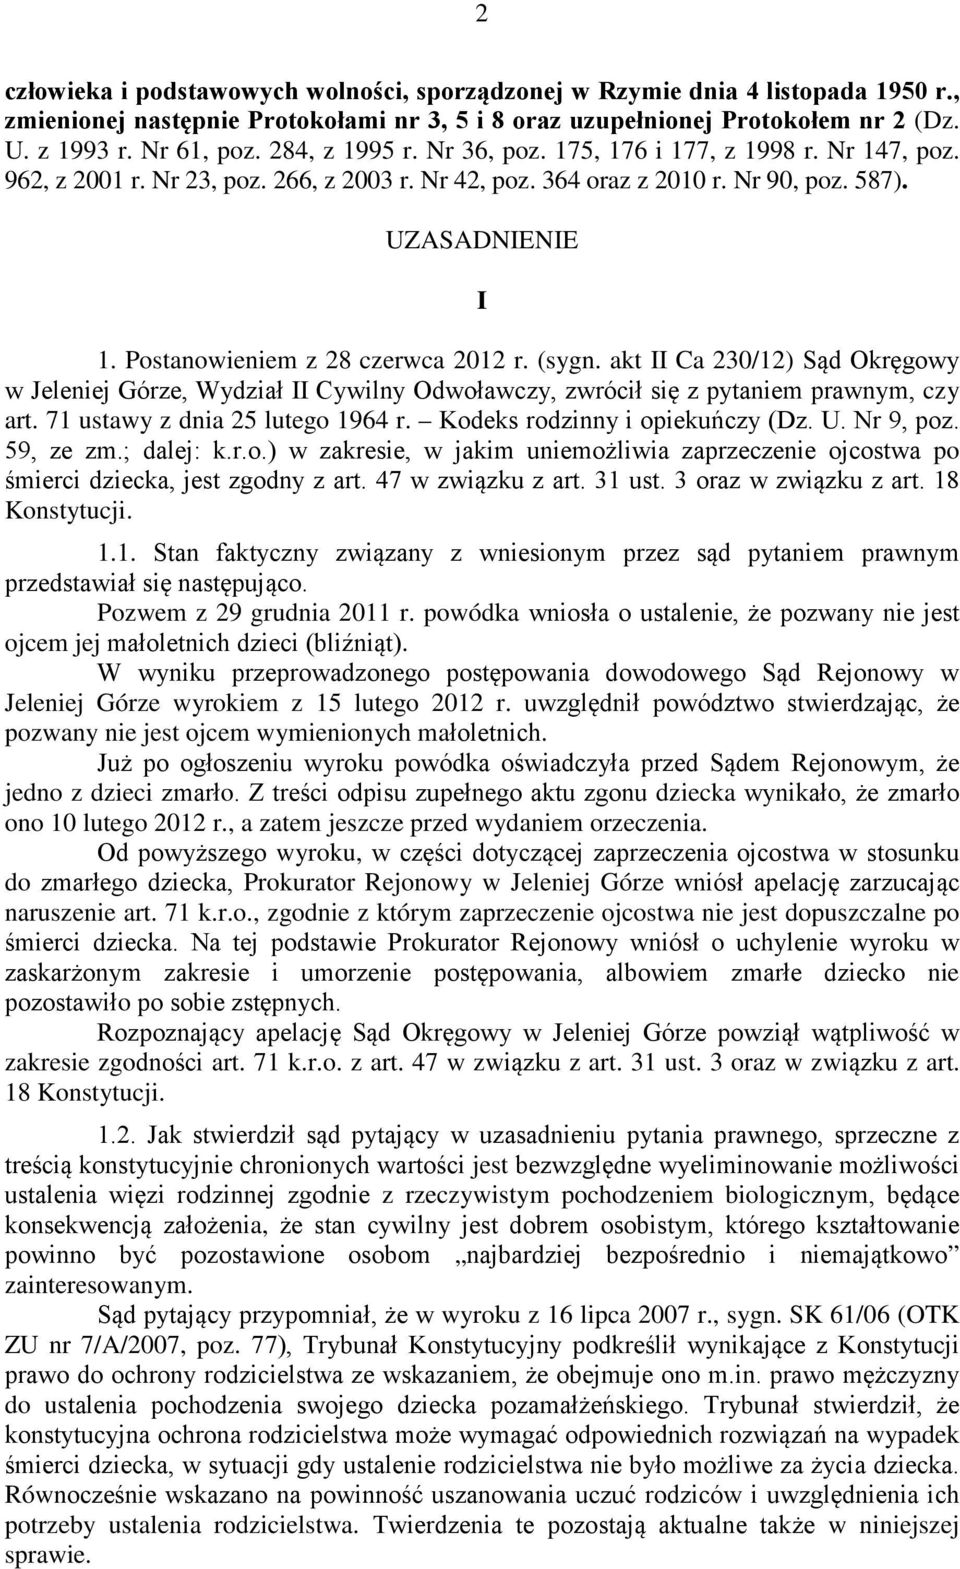 Postanowieniem z 28 czerwca 2012 r. (sygn. akt II Ca 230/12) Sąd Okręgowy w Jeleniej Górze, Wydział II Cywilny Odwoławczy, zwrócił się z pytaniem prawnym, czy art. 71 ustawy z dnia 25 lutego 1964 r.